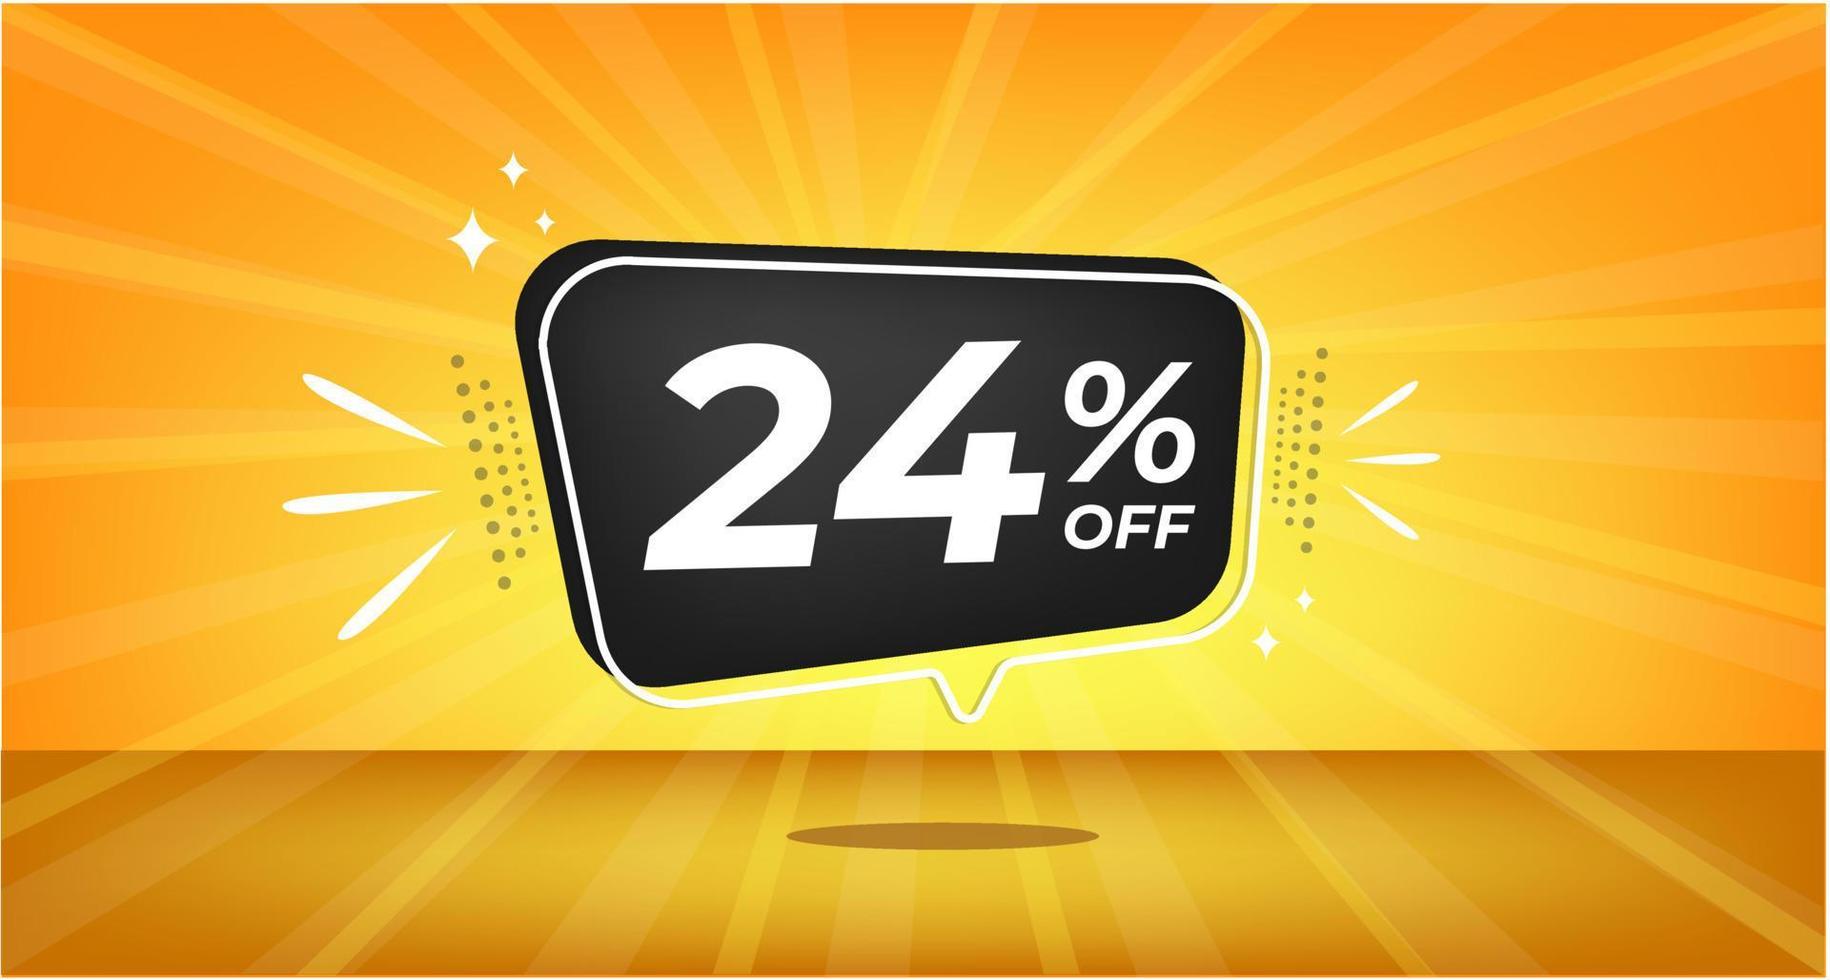 24 procent av. gul baner med tjugofyra procent rabatt på en svart ballong för mega stor försäljning. vektor